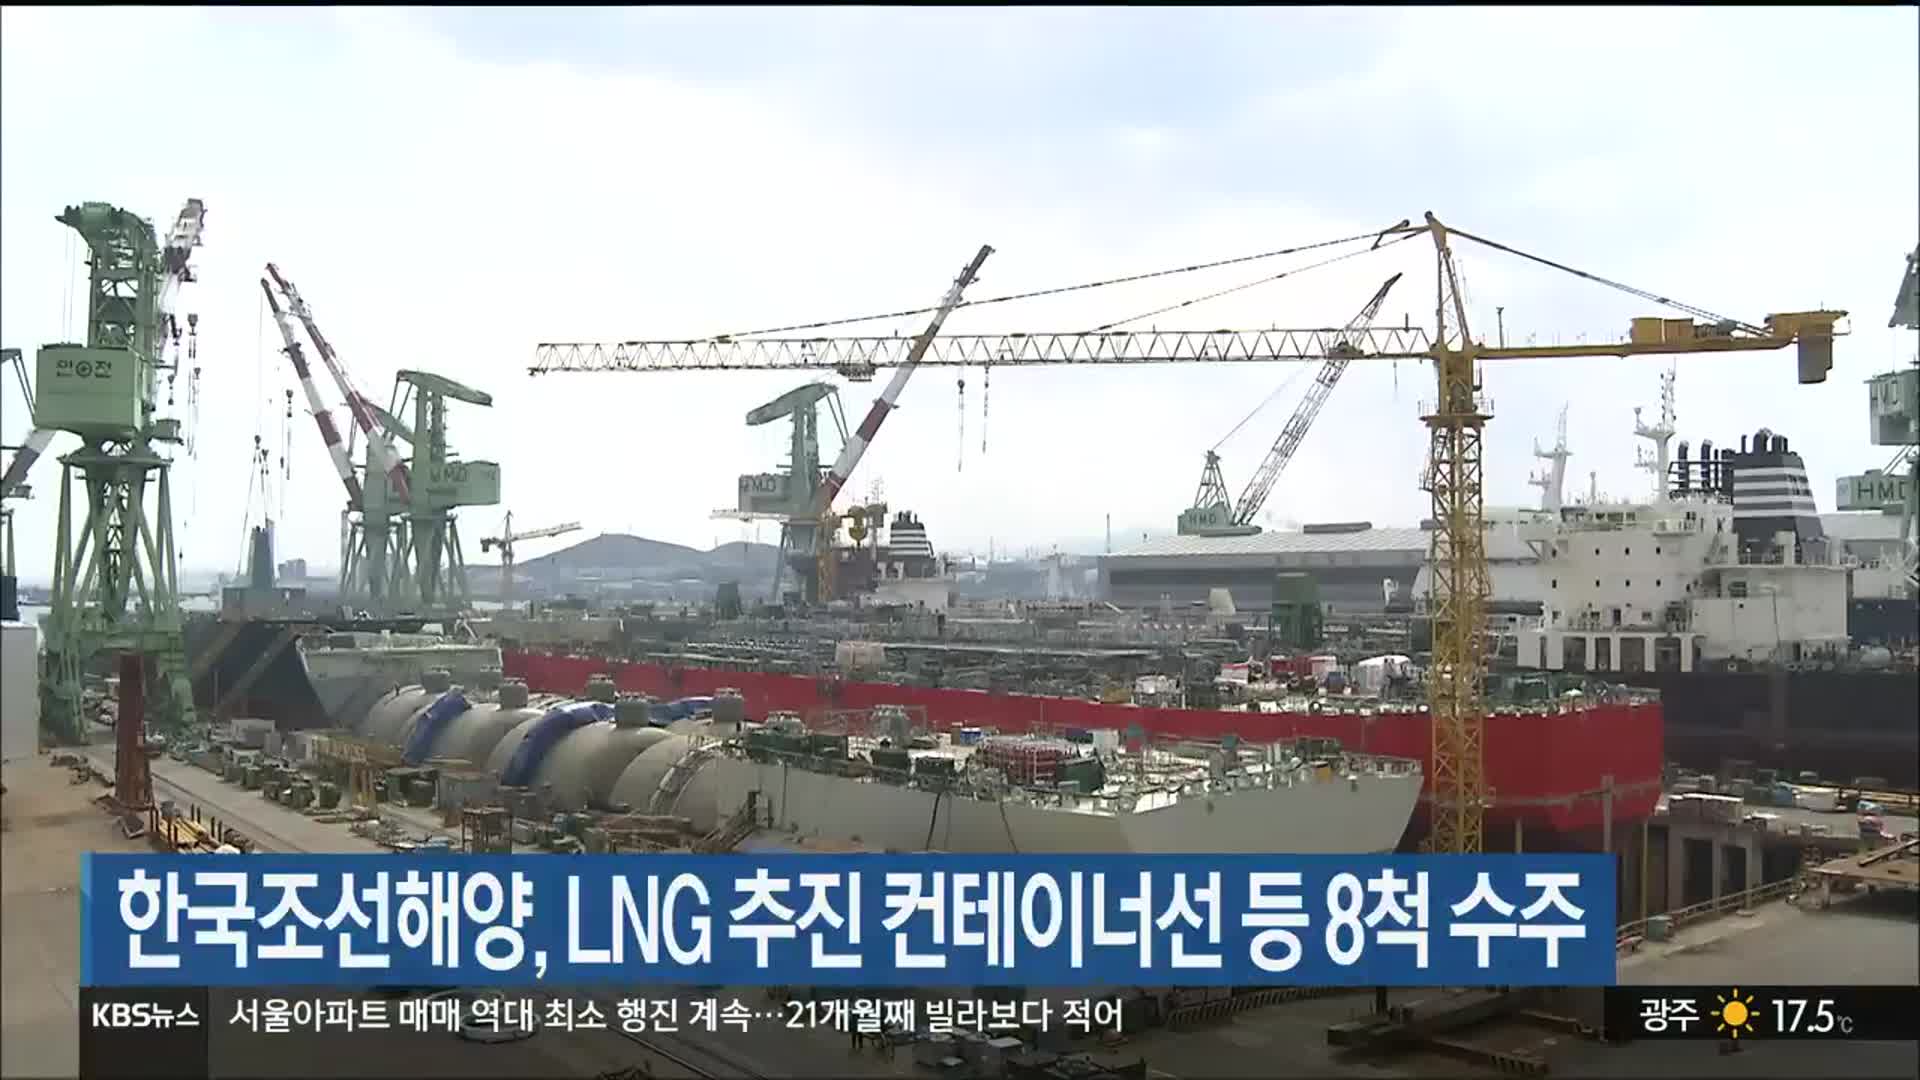 한국조선해양, LNG 추진 컨테이너선 등 8척 수주